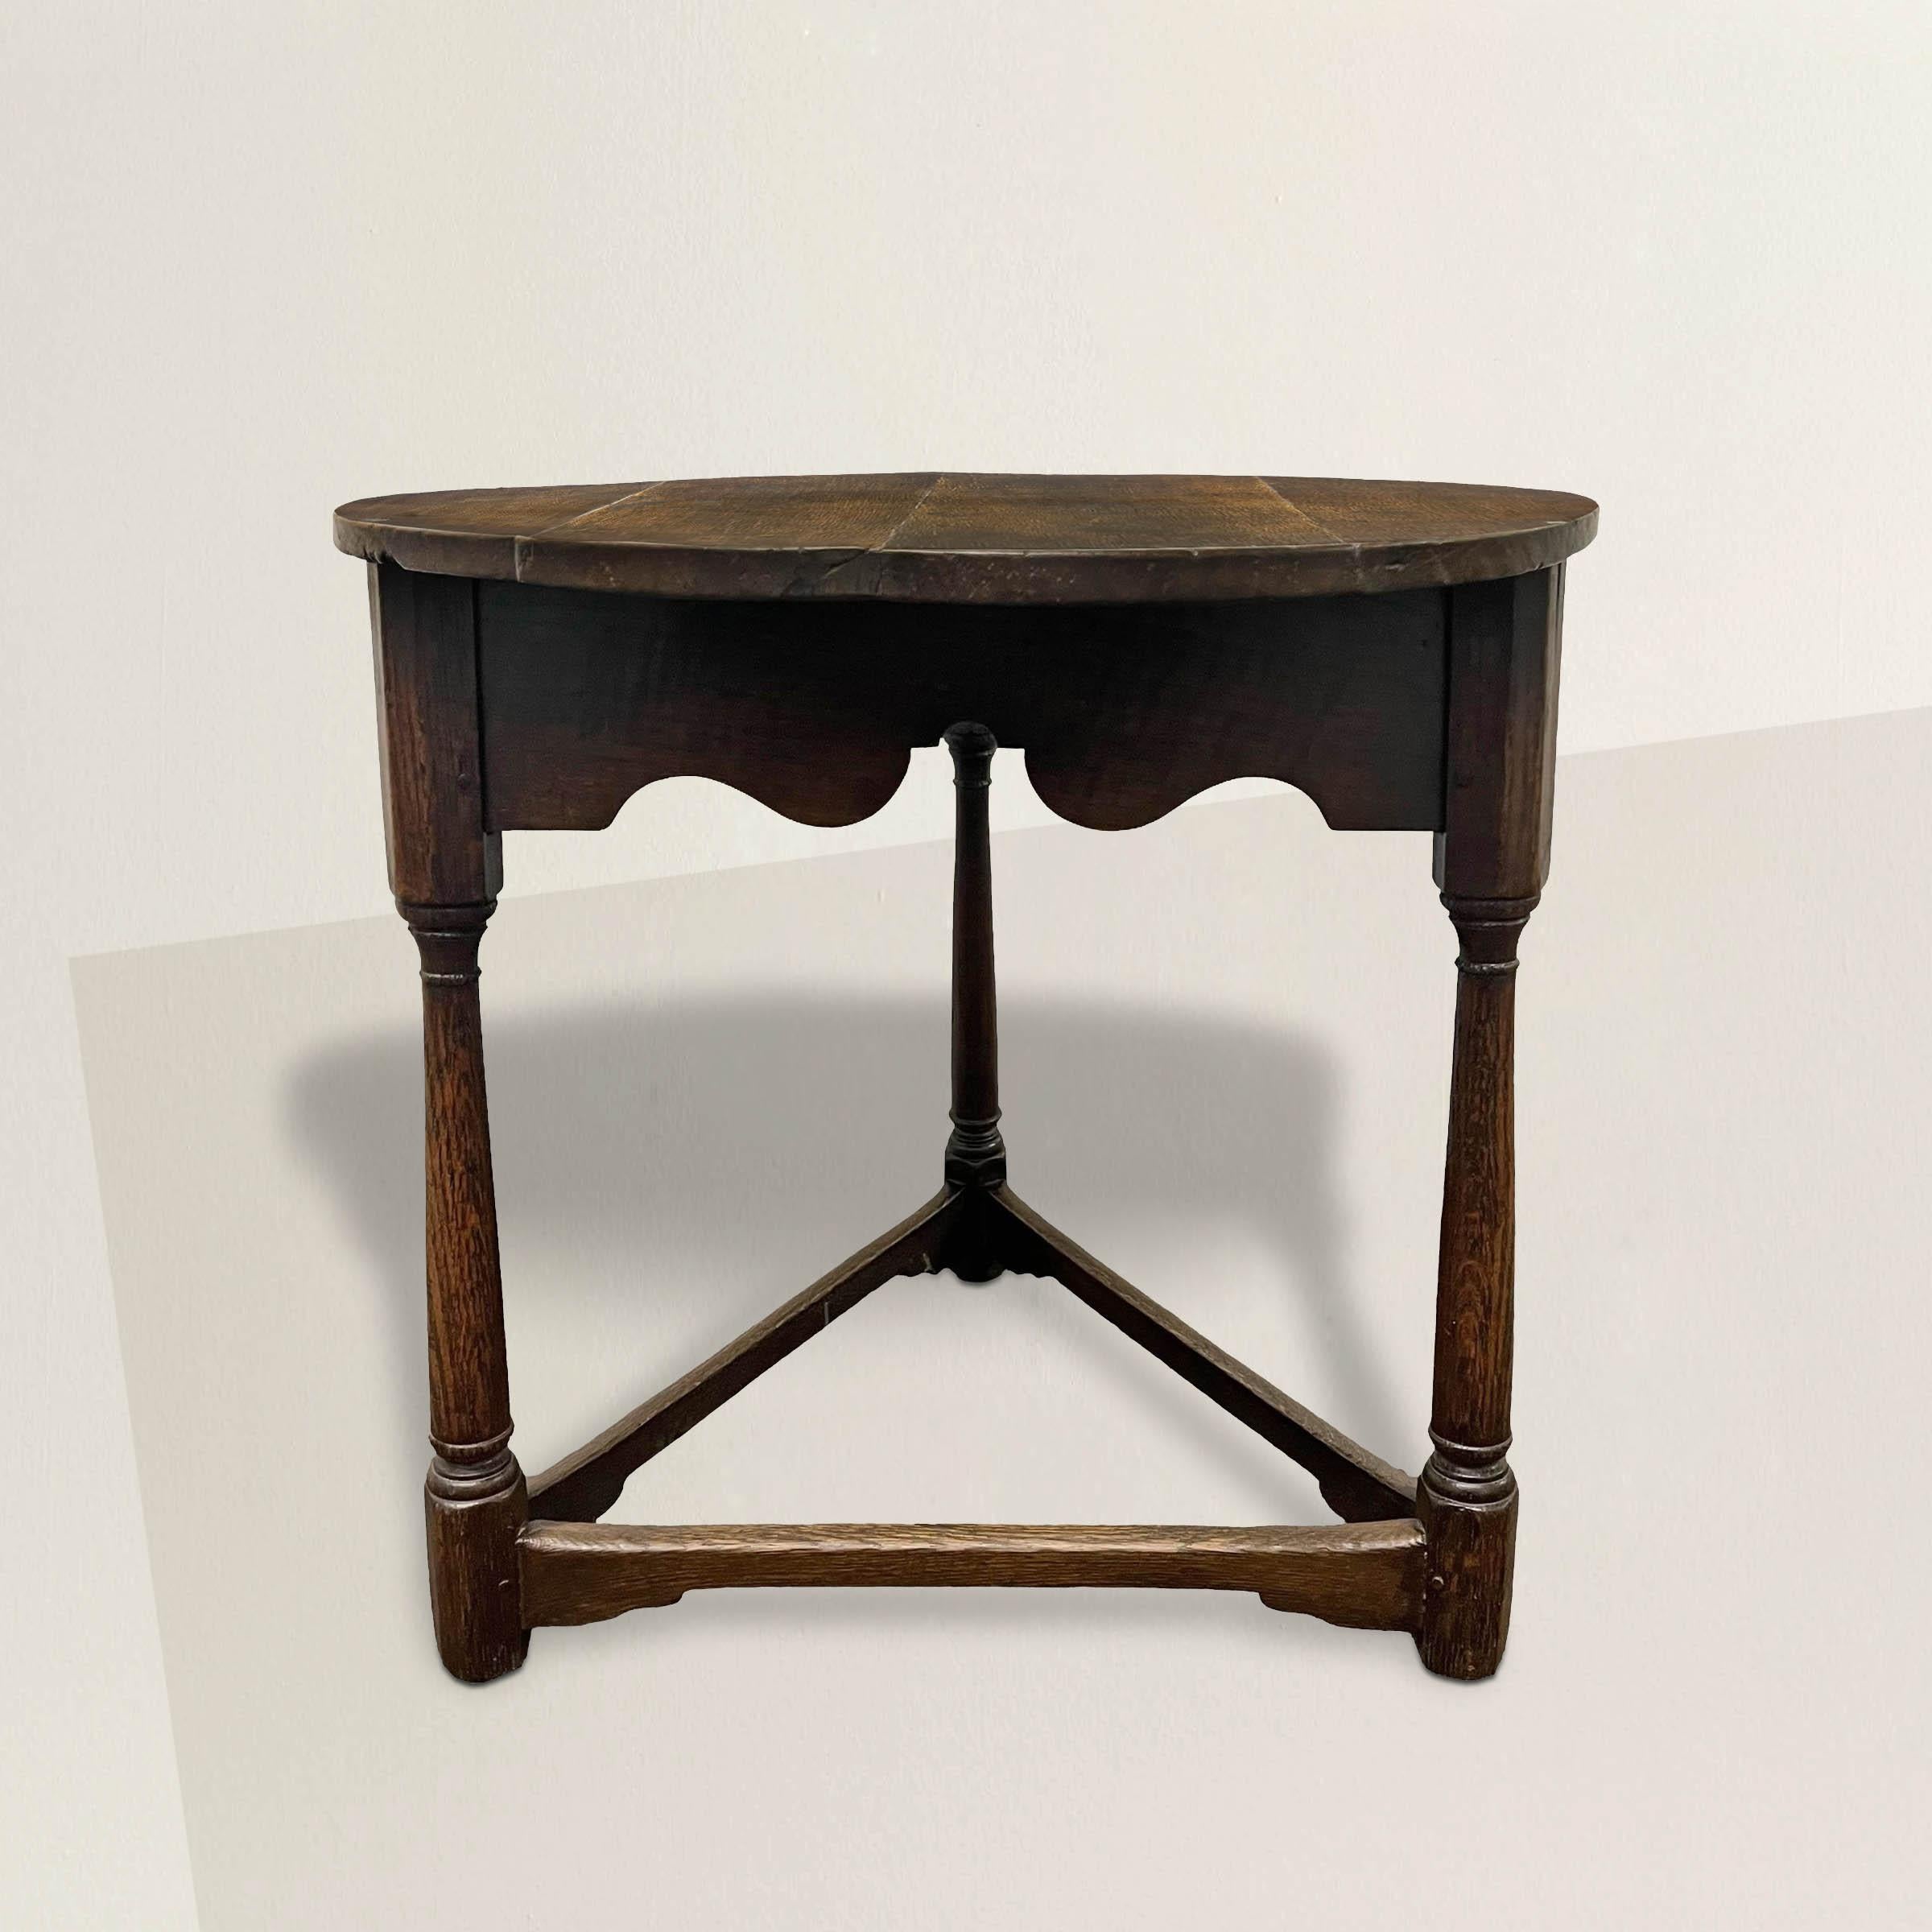 Admirez l'élégance intemporelle de cette table de cricket en chêne anglais du XVIIIe siècle, une pièce essentielle de la culture anglaise. Son plateau rond, orné d'un tablier festonné, repose gracieusement sur trois pieds colonnaires délicieusement